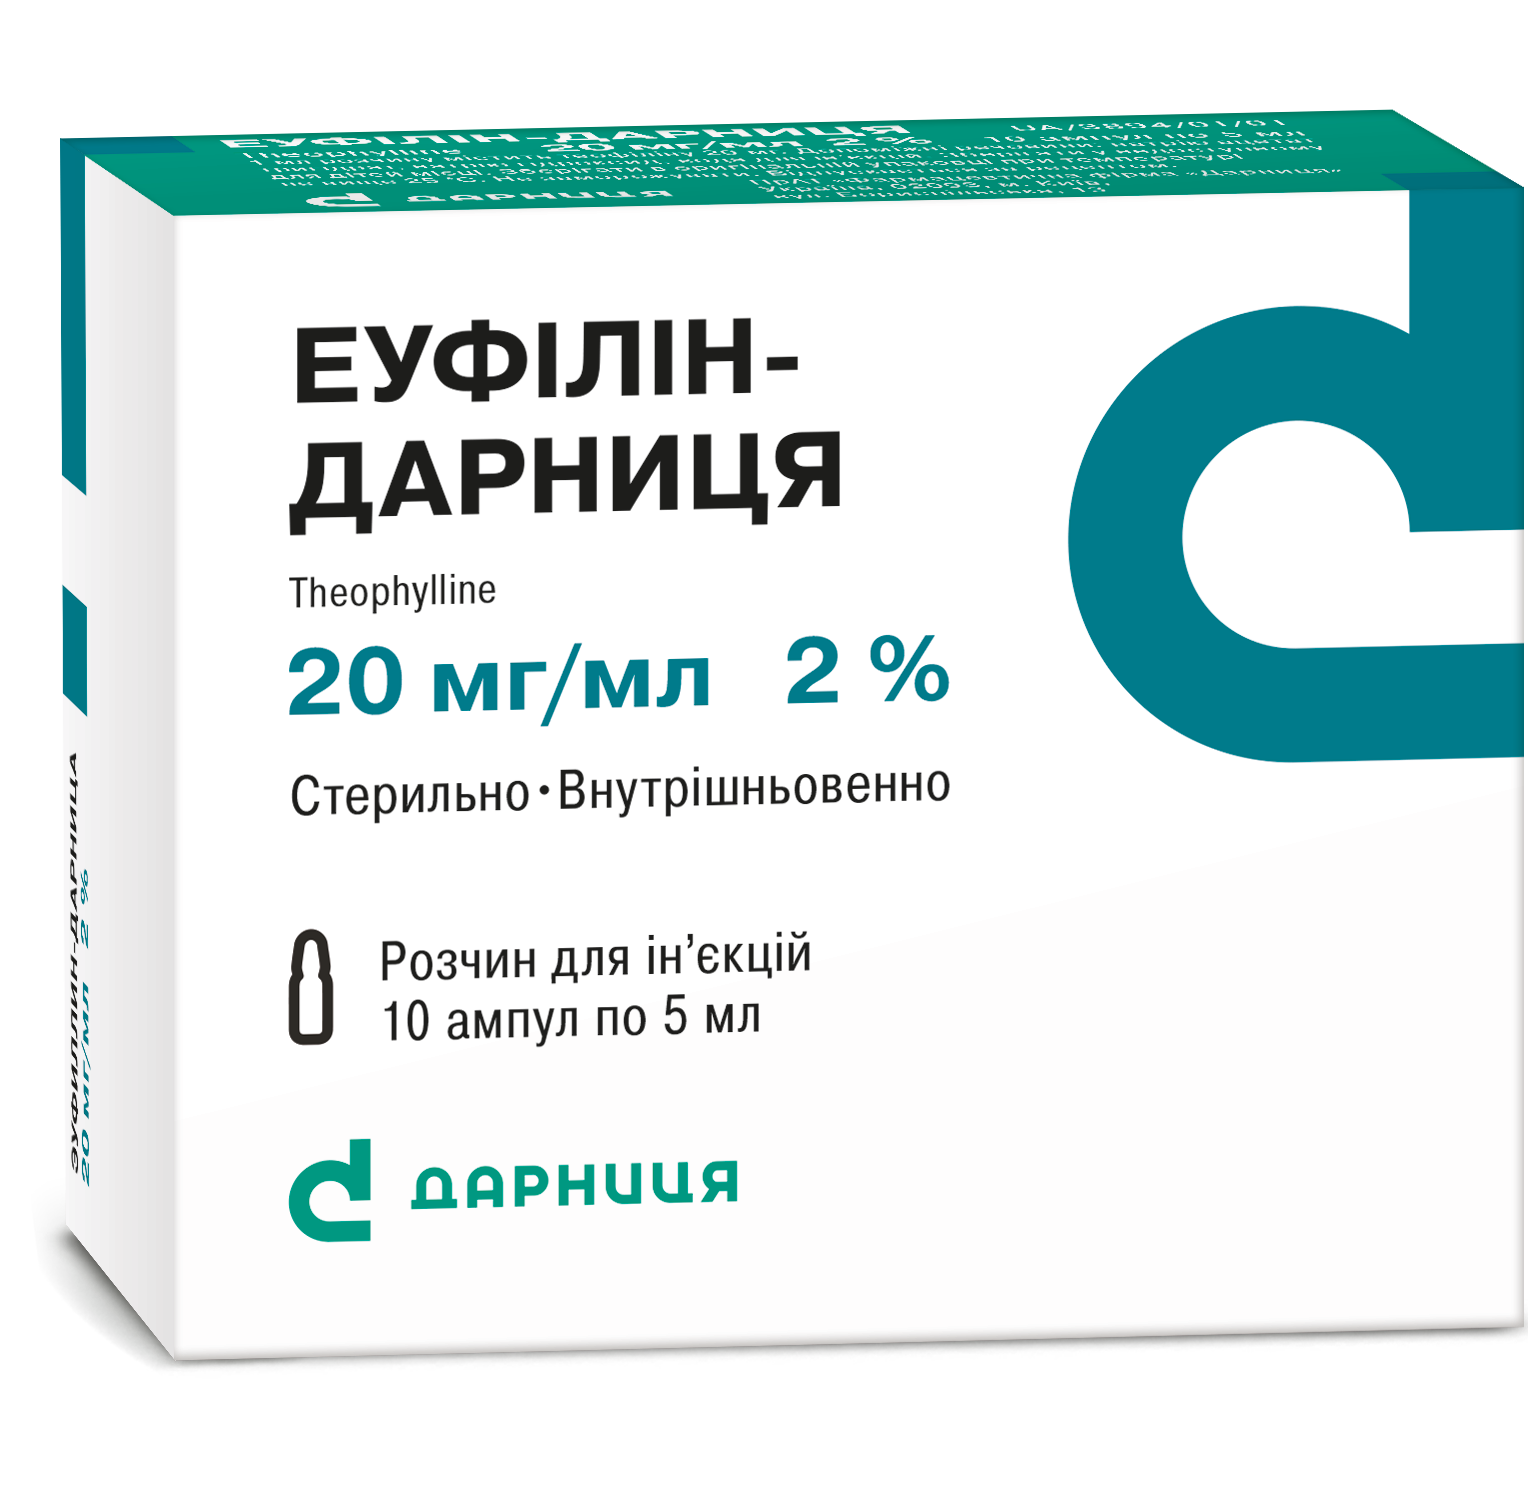 Euphylline-Darnitsa